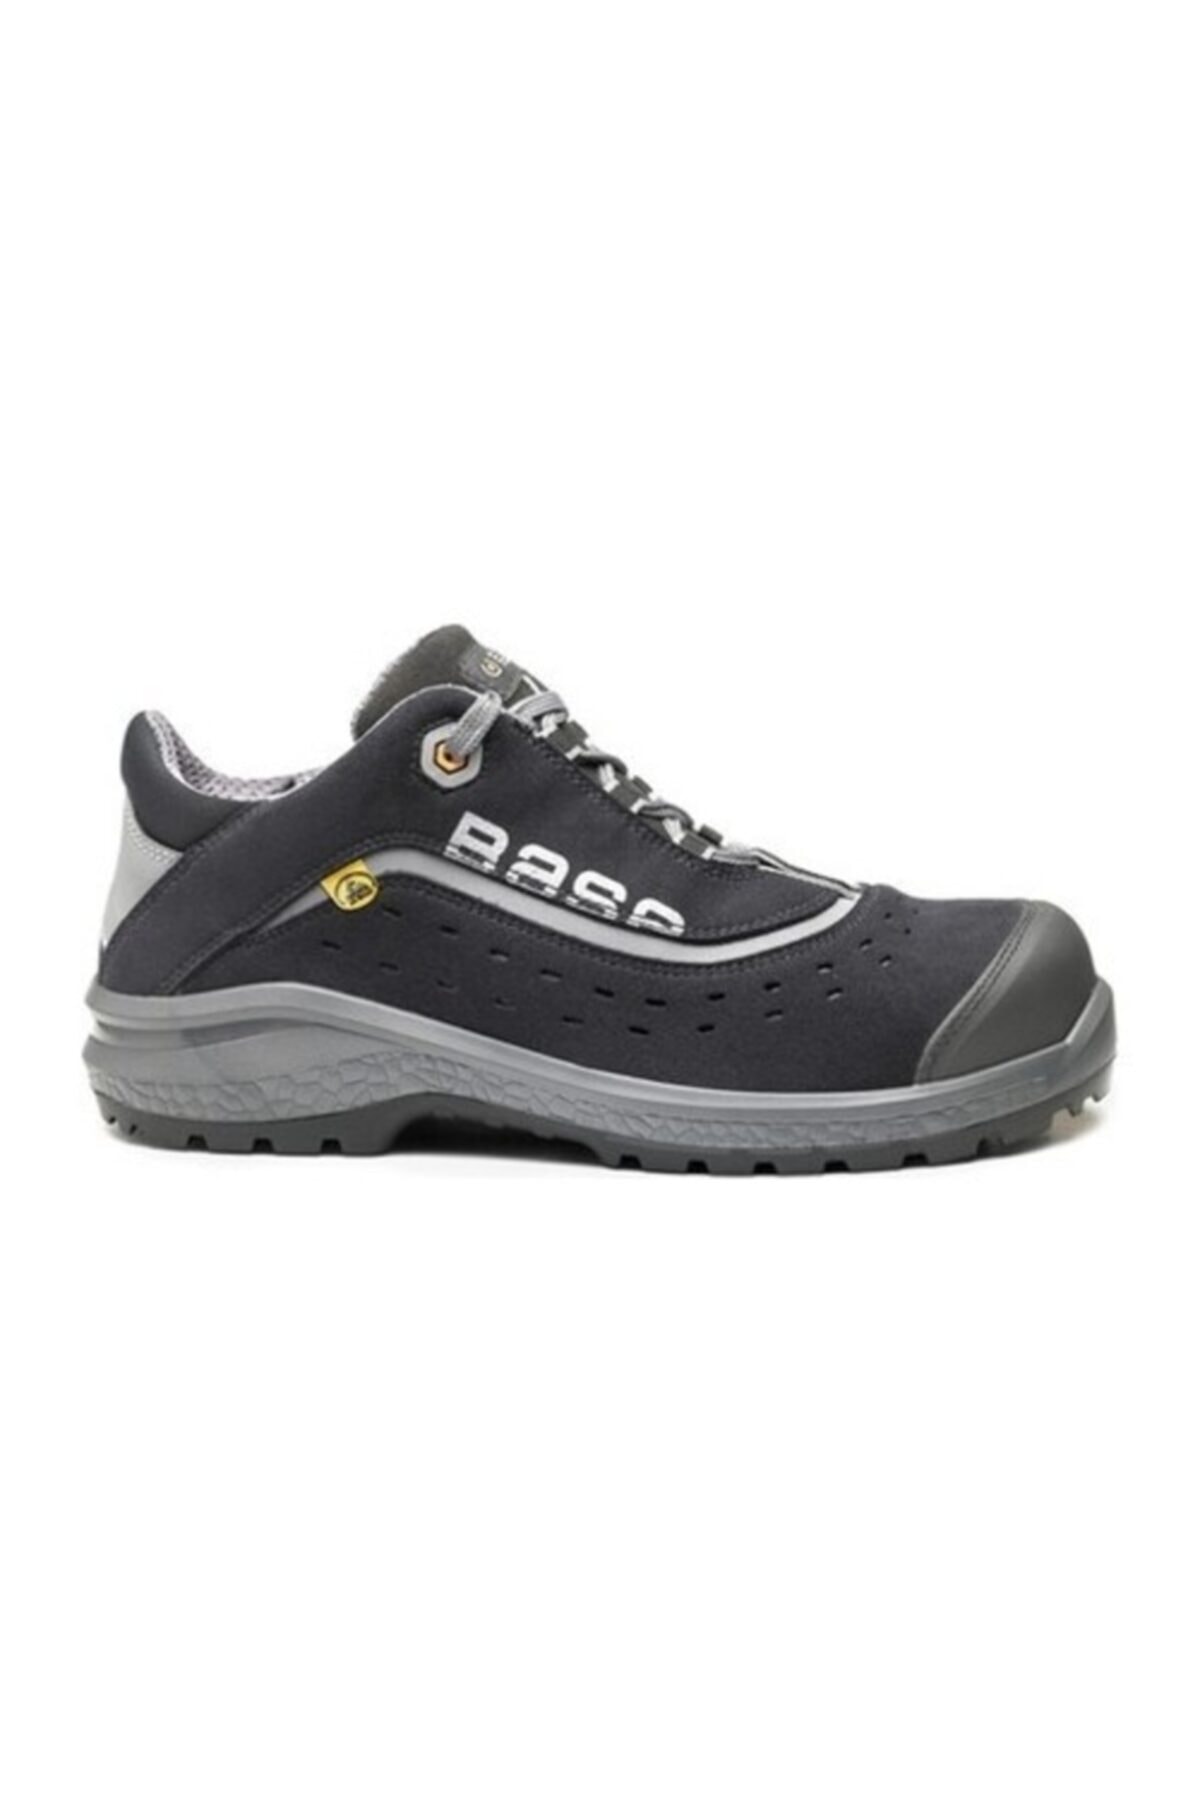 BASE Iş Güvenlik Ayakkabısı B0886 Be-style S1p Esd Src